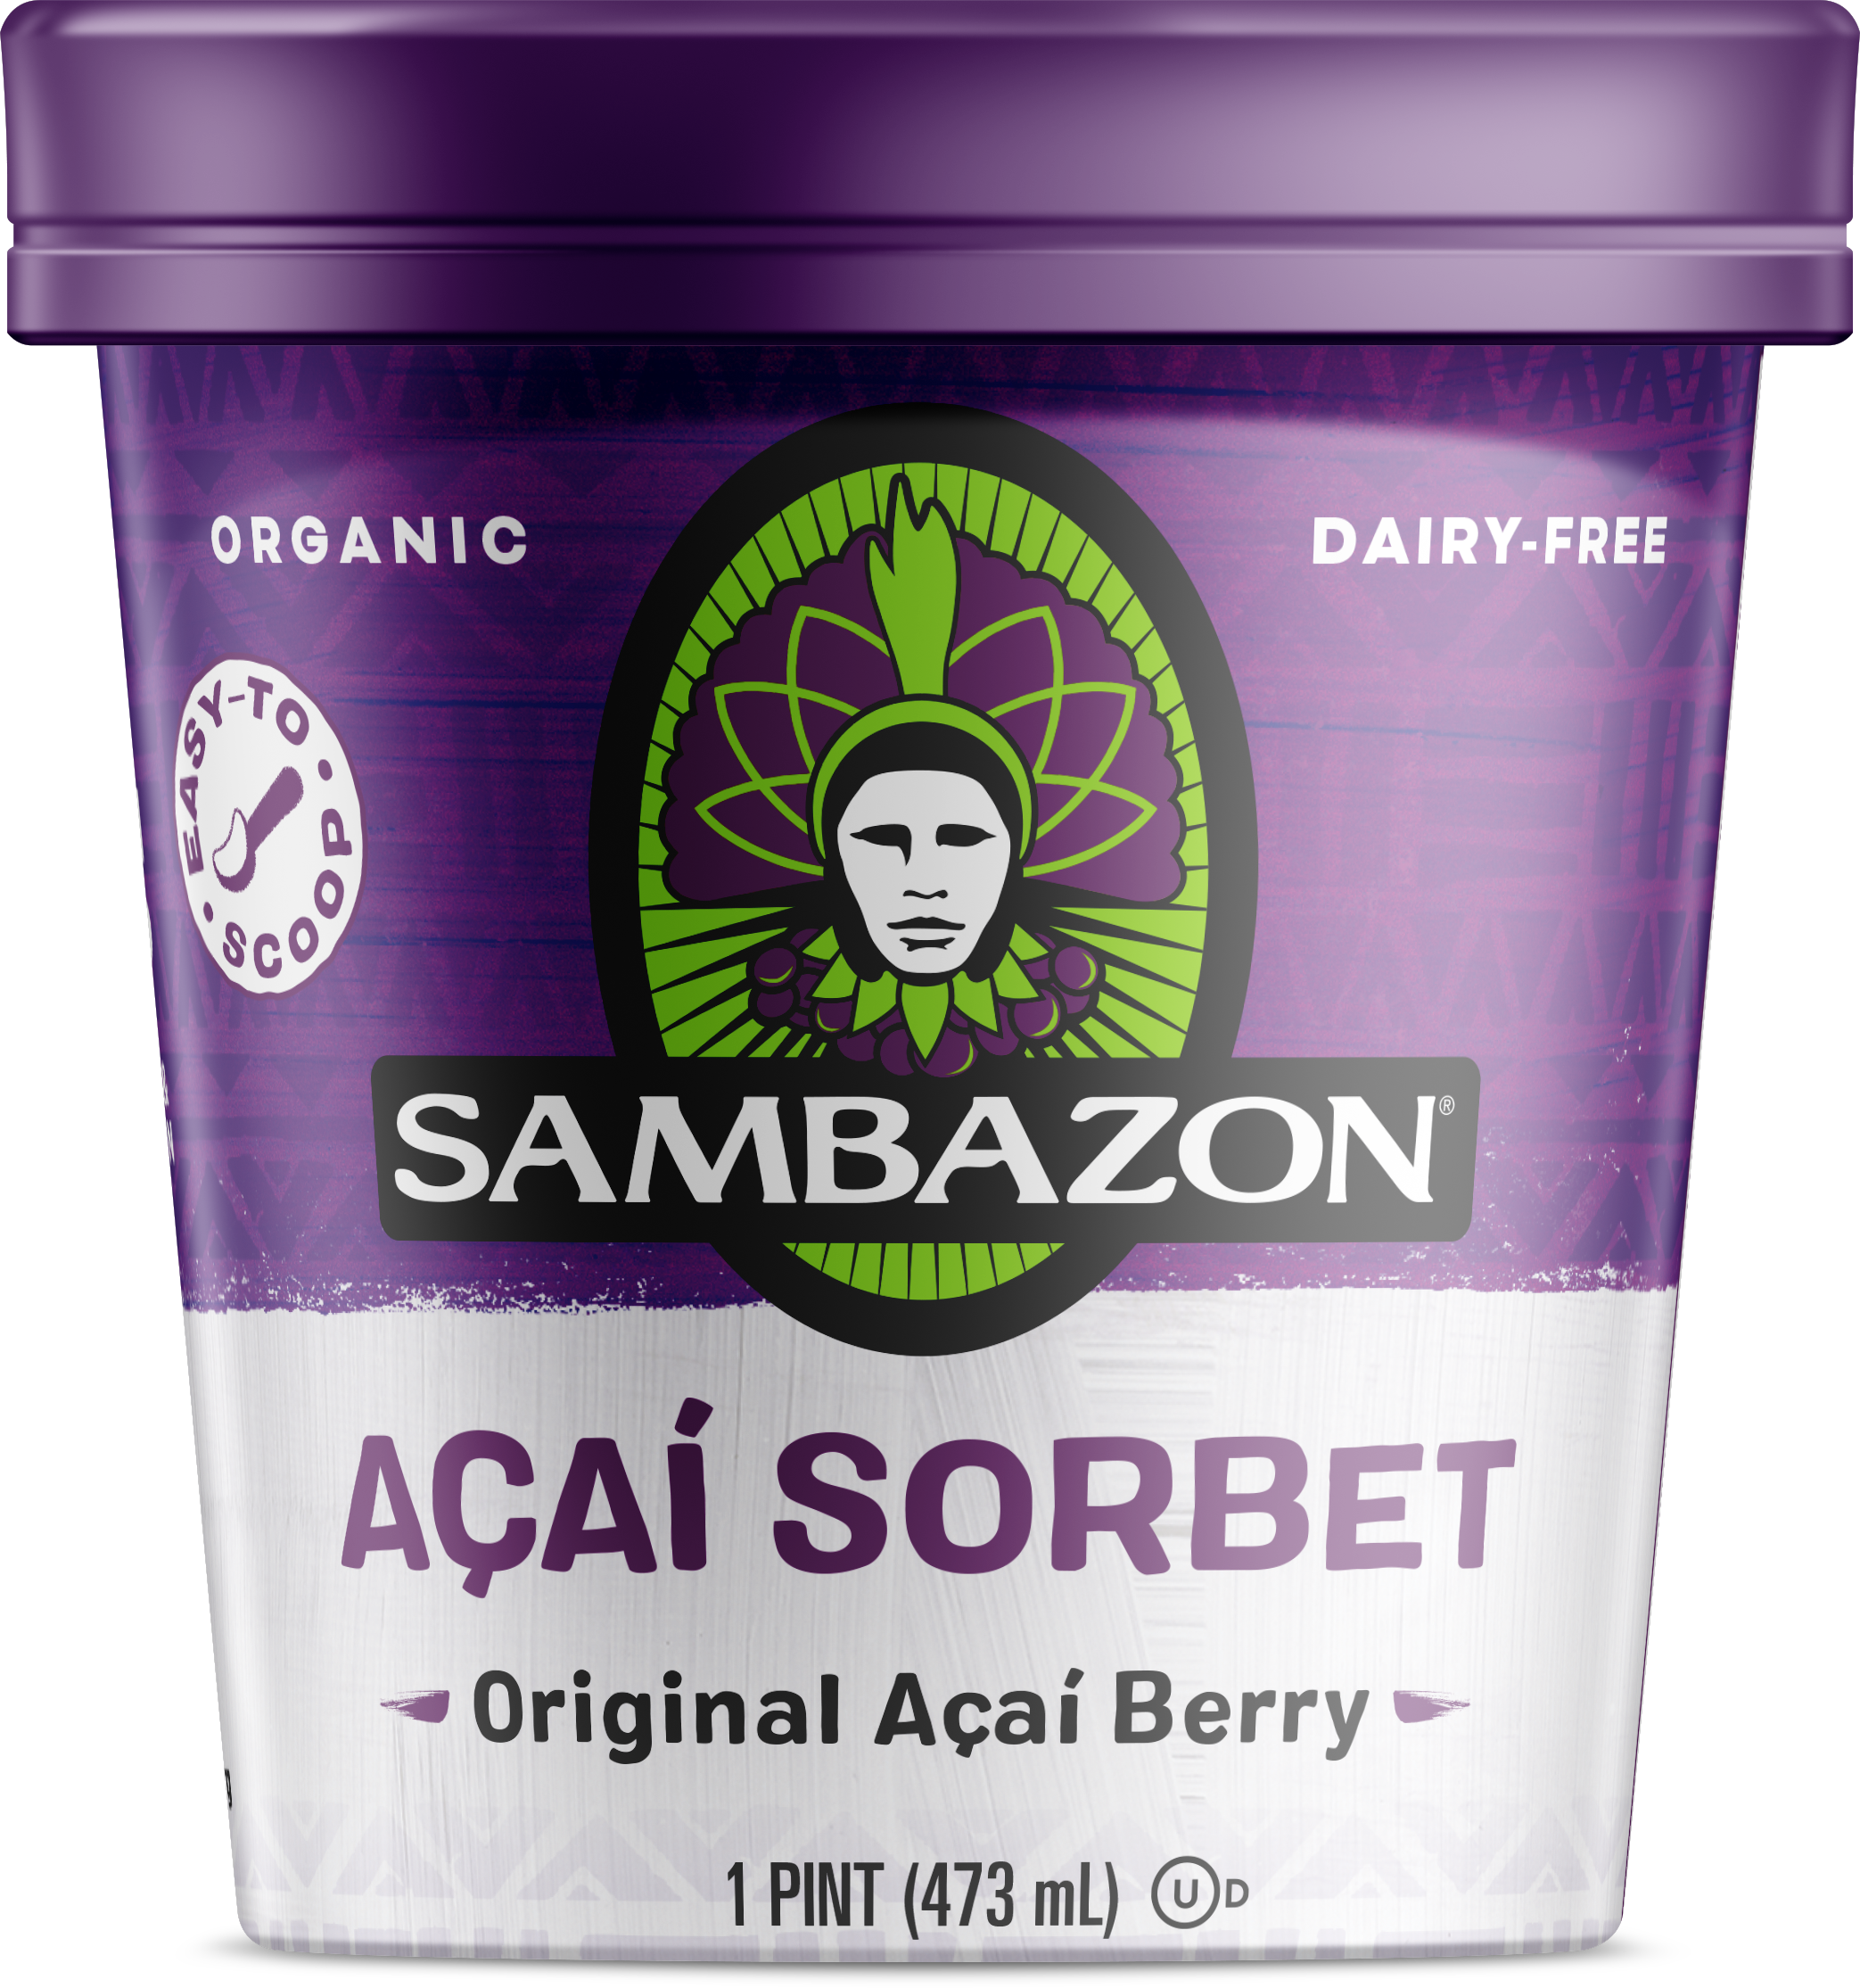 Sambazon Original Acai Blend Sorbet, Pint 8 units per case 16.0 oz